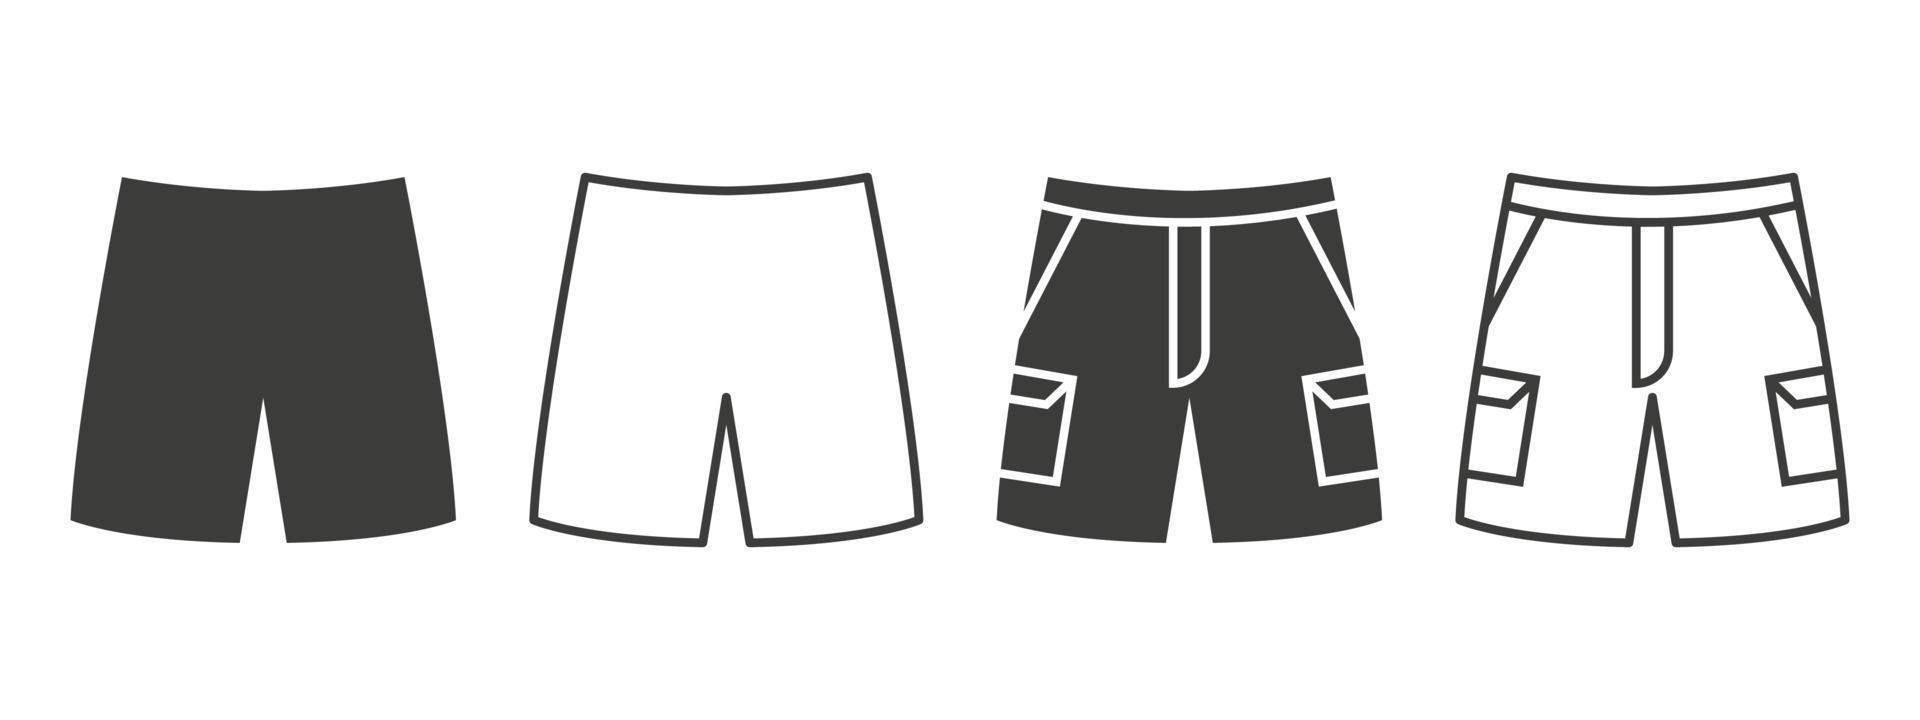 Shorts-Symbole. Shorts mit Taschen in verschiedenen Stilen. Kleidungssymbolkonzept. Vektor-Illustration vektor